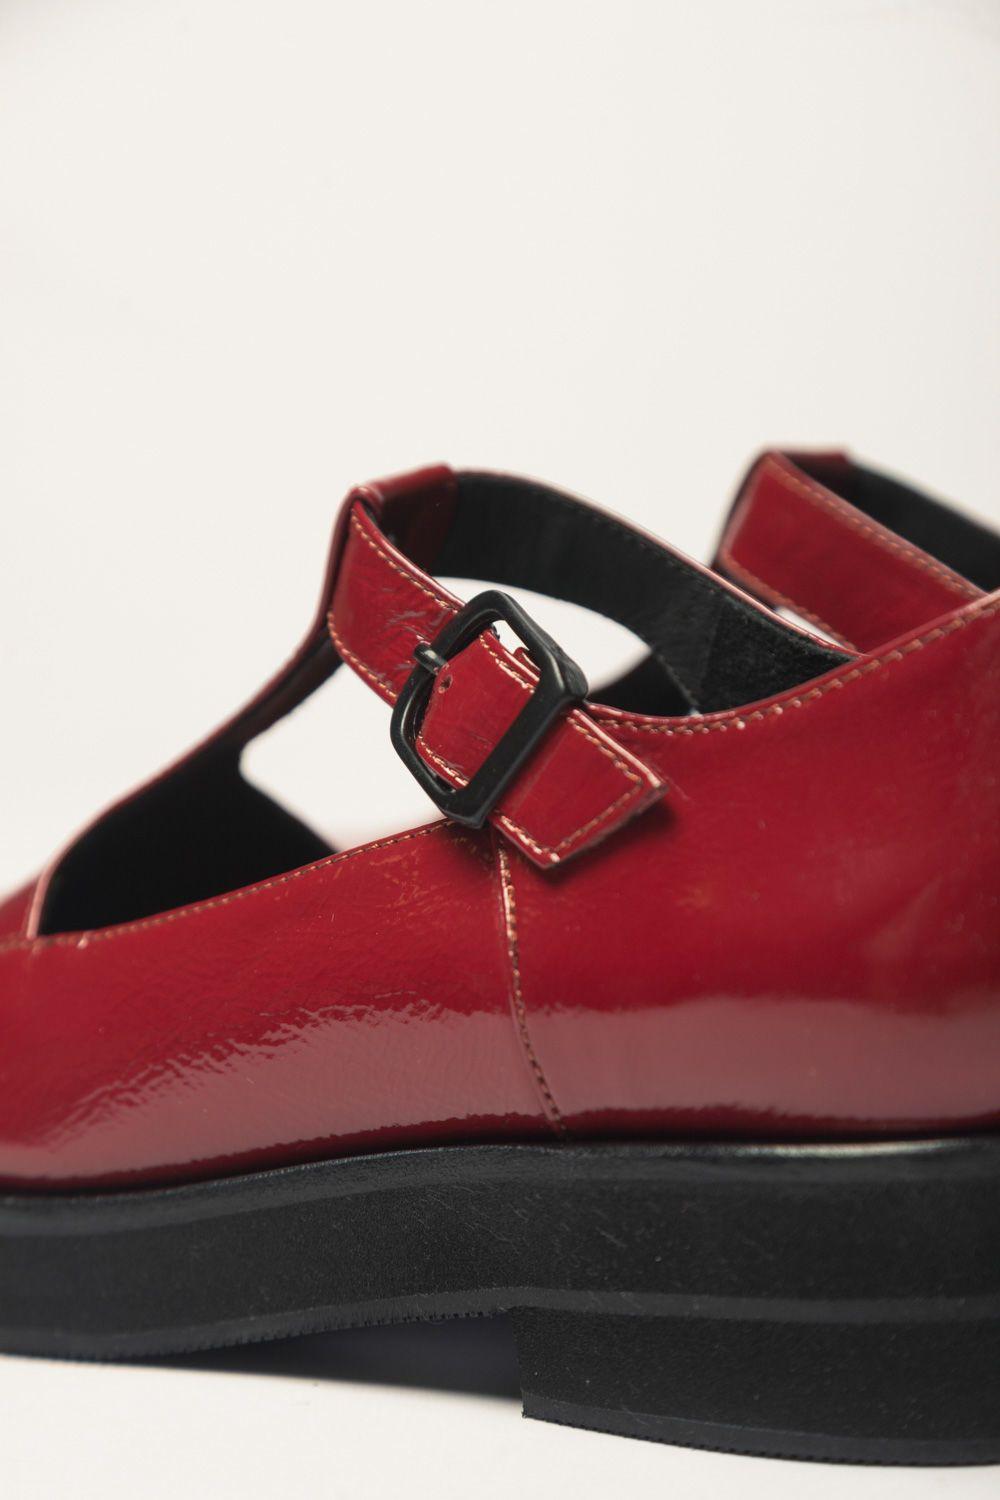 Zapato Guillermina Rojo 36